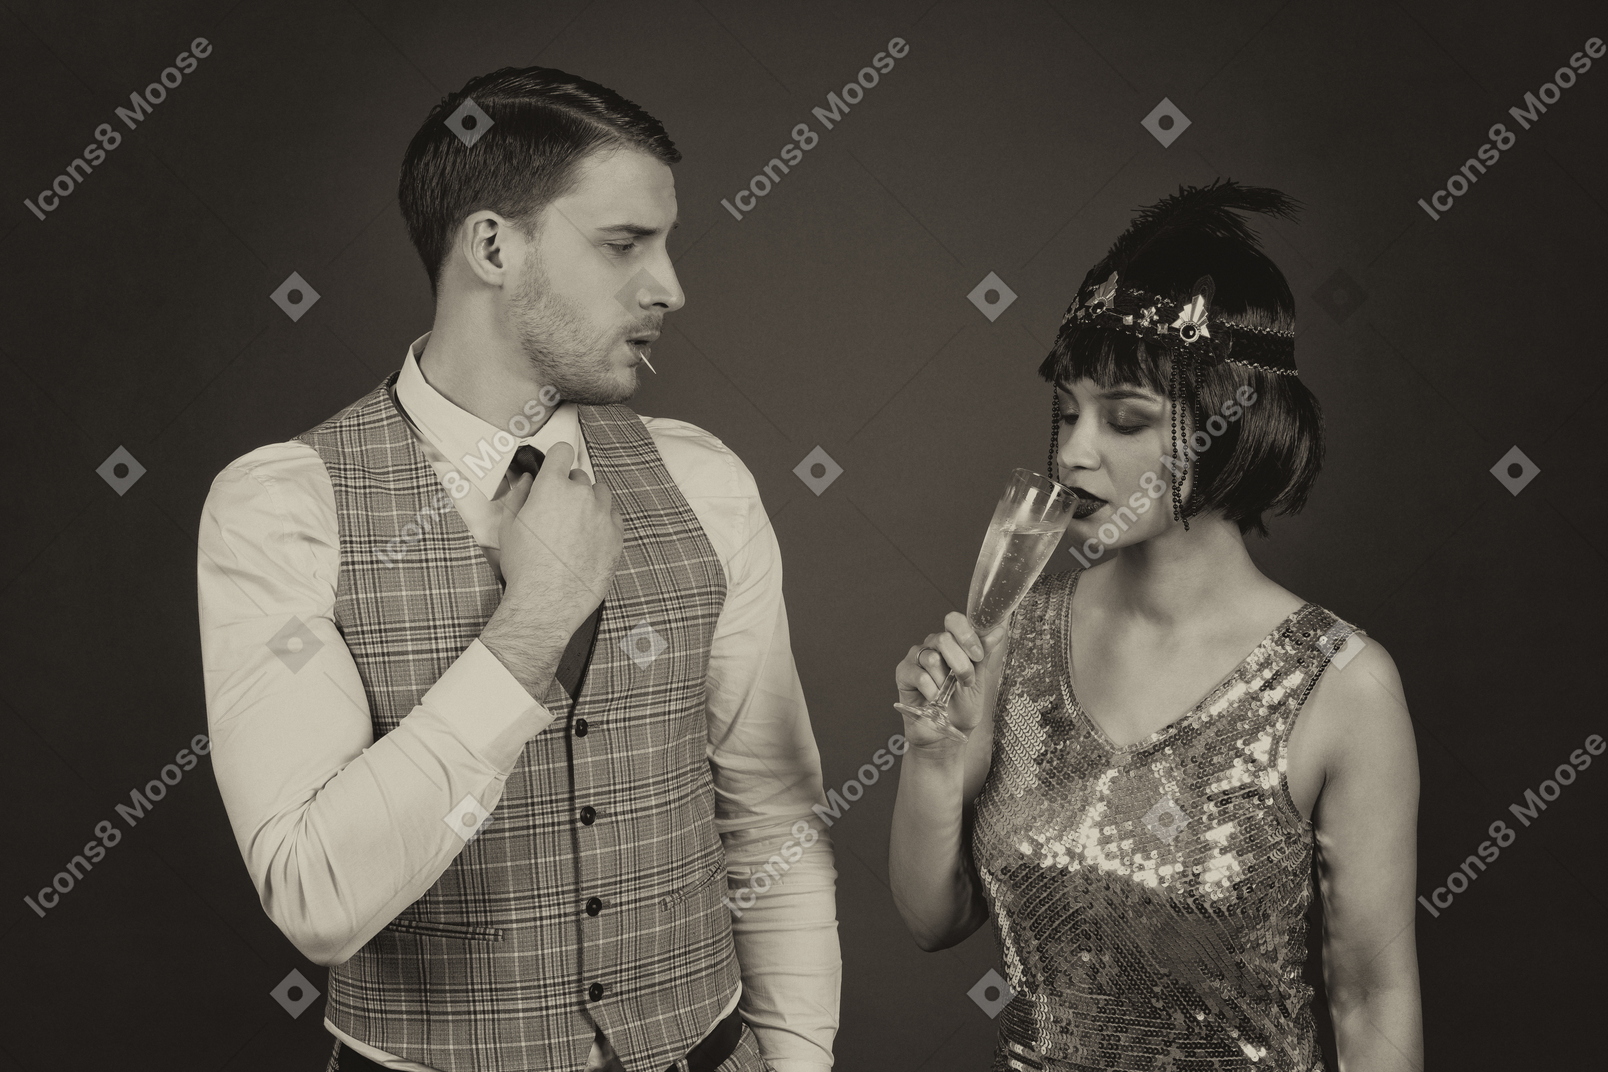 Мужчина поправляет галстук, глядя на свою девушку с бокалом шампанского